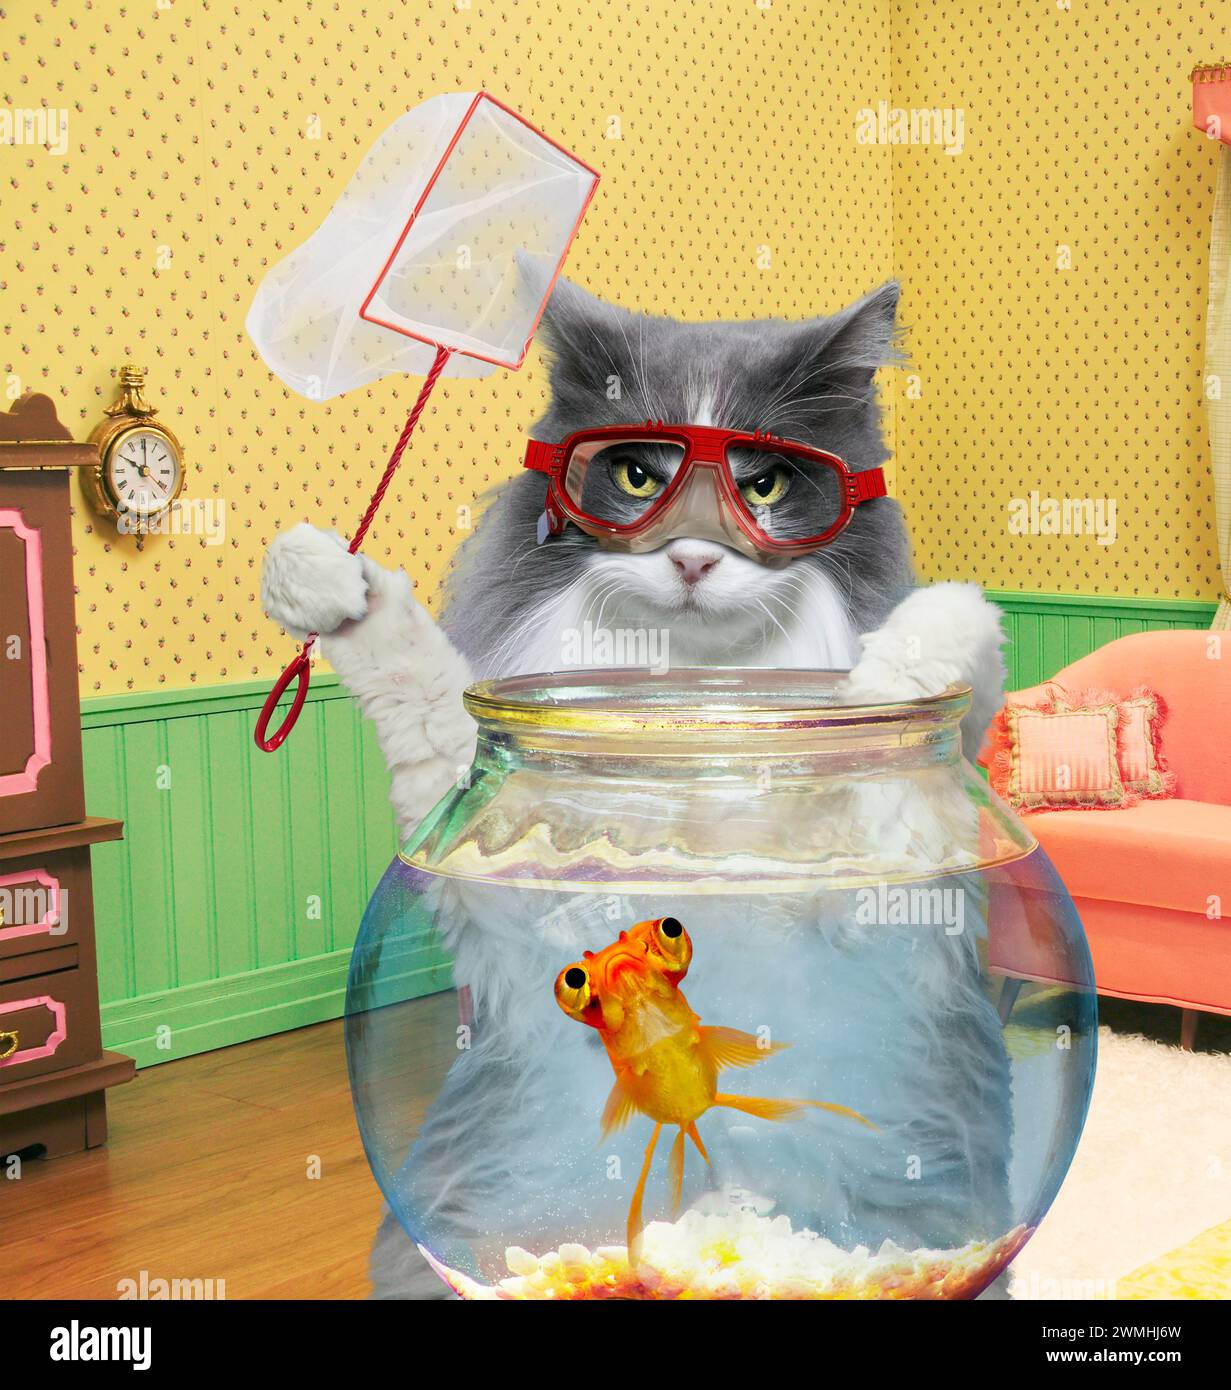 Un chat intelligent tient un filet et porte des lunettes de natation alors qu'il se tient debout au-dessus d'un bol de poisson avec un poisson rouge inquiet à l'intérieur dans un cliché drôle de chat. Banque D'Images